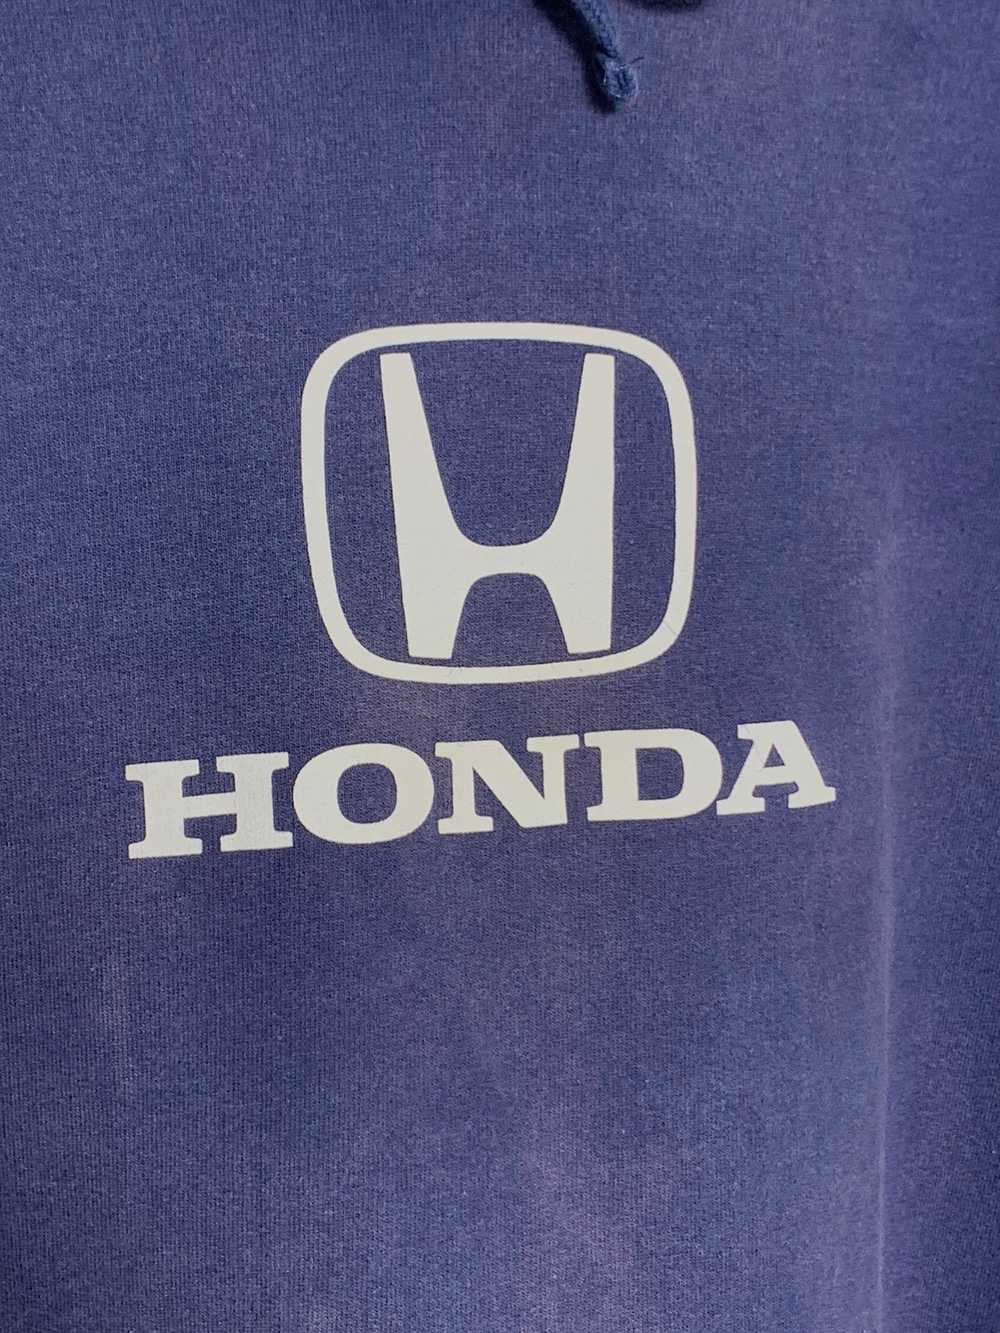 Sports Specialties - Honda Center Logo Pullover H… - image 3